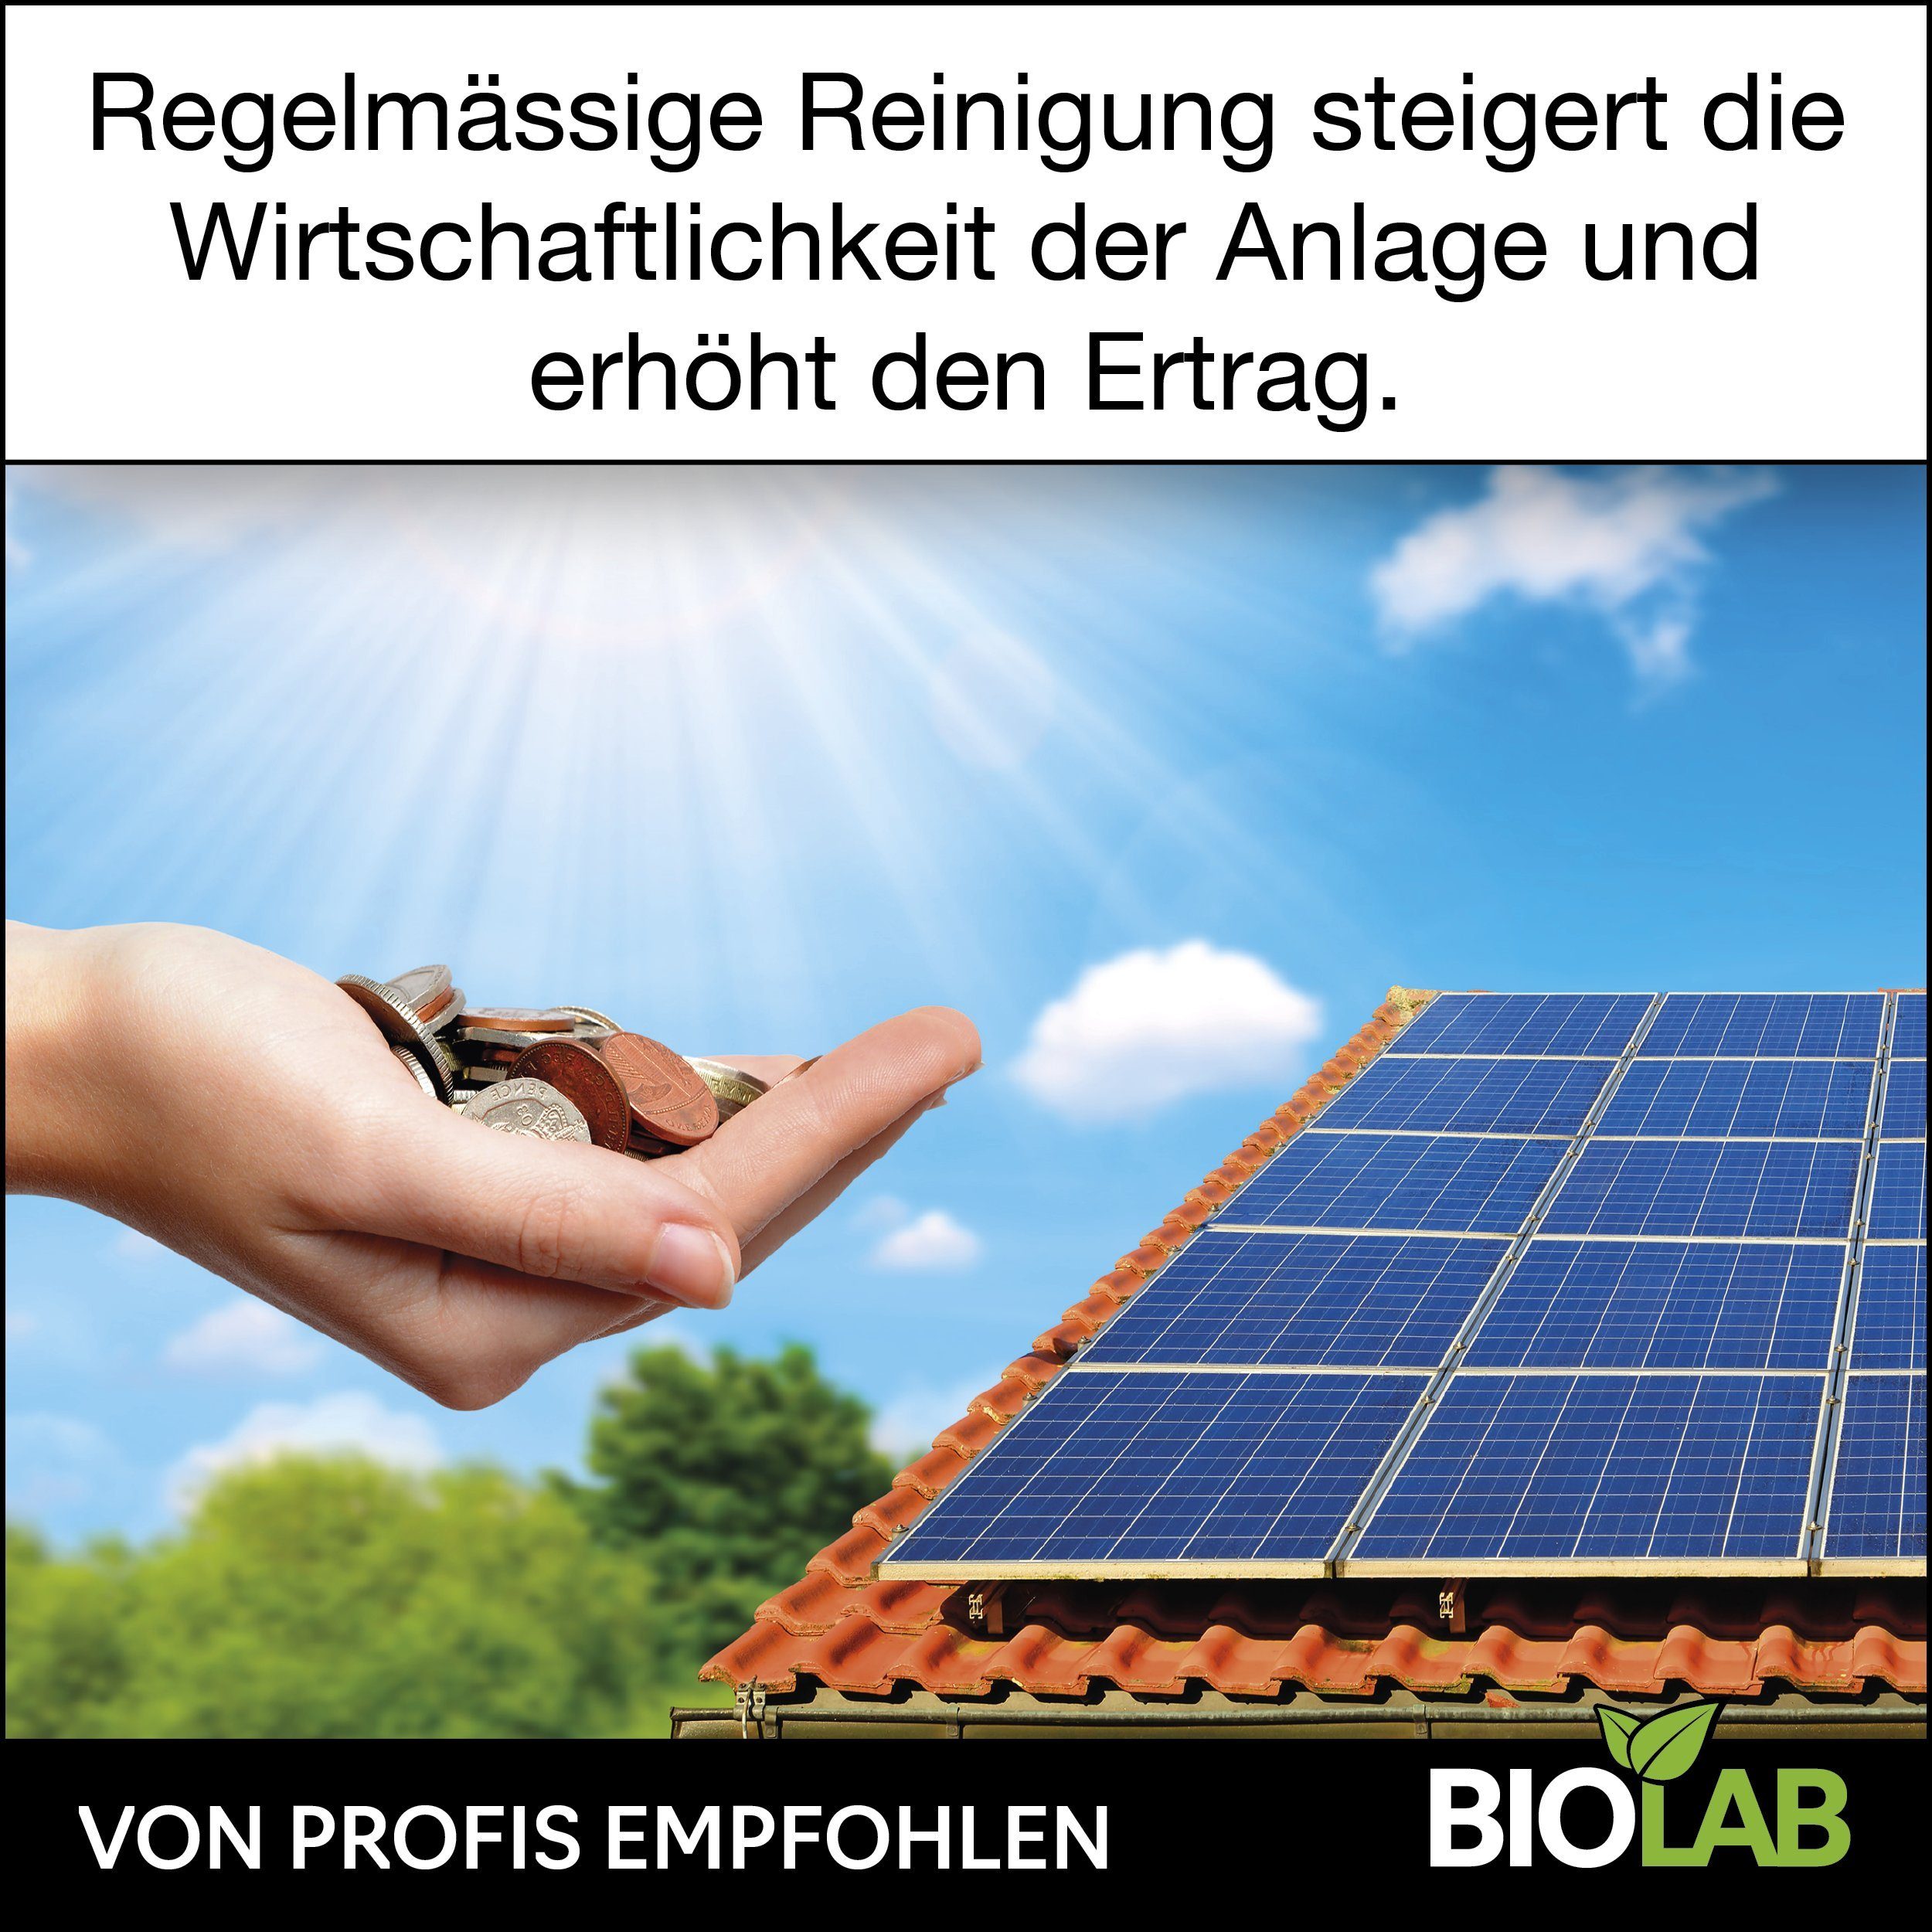 BIOLAB Reinigungskonzentrat Photovoltaik Solar ml Bio und (1-St. PV Reiniger Reinigungsmittel 1:20 1000 Solaranlagen Solarreiniger) Konzentrat